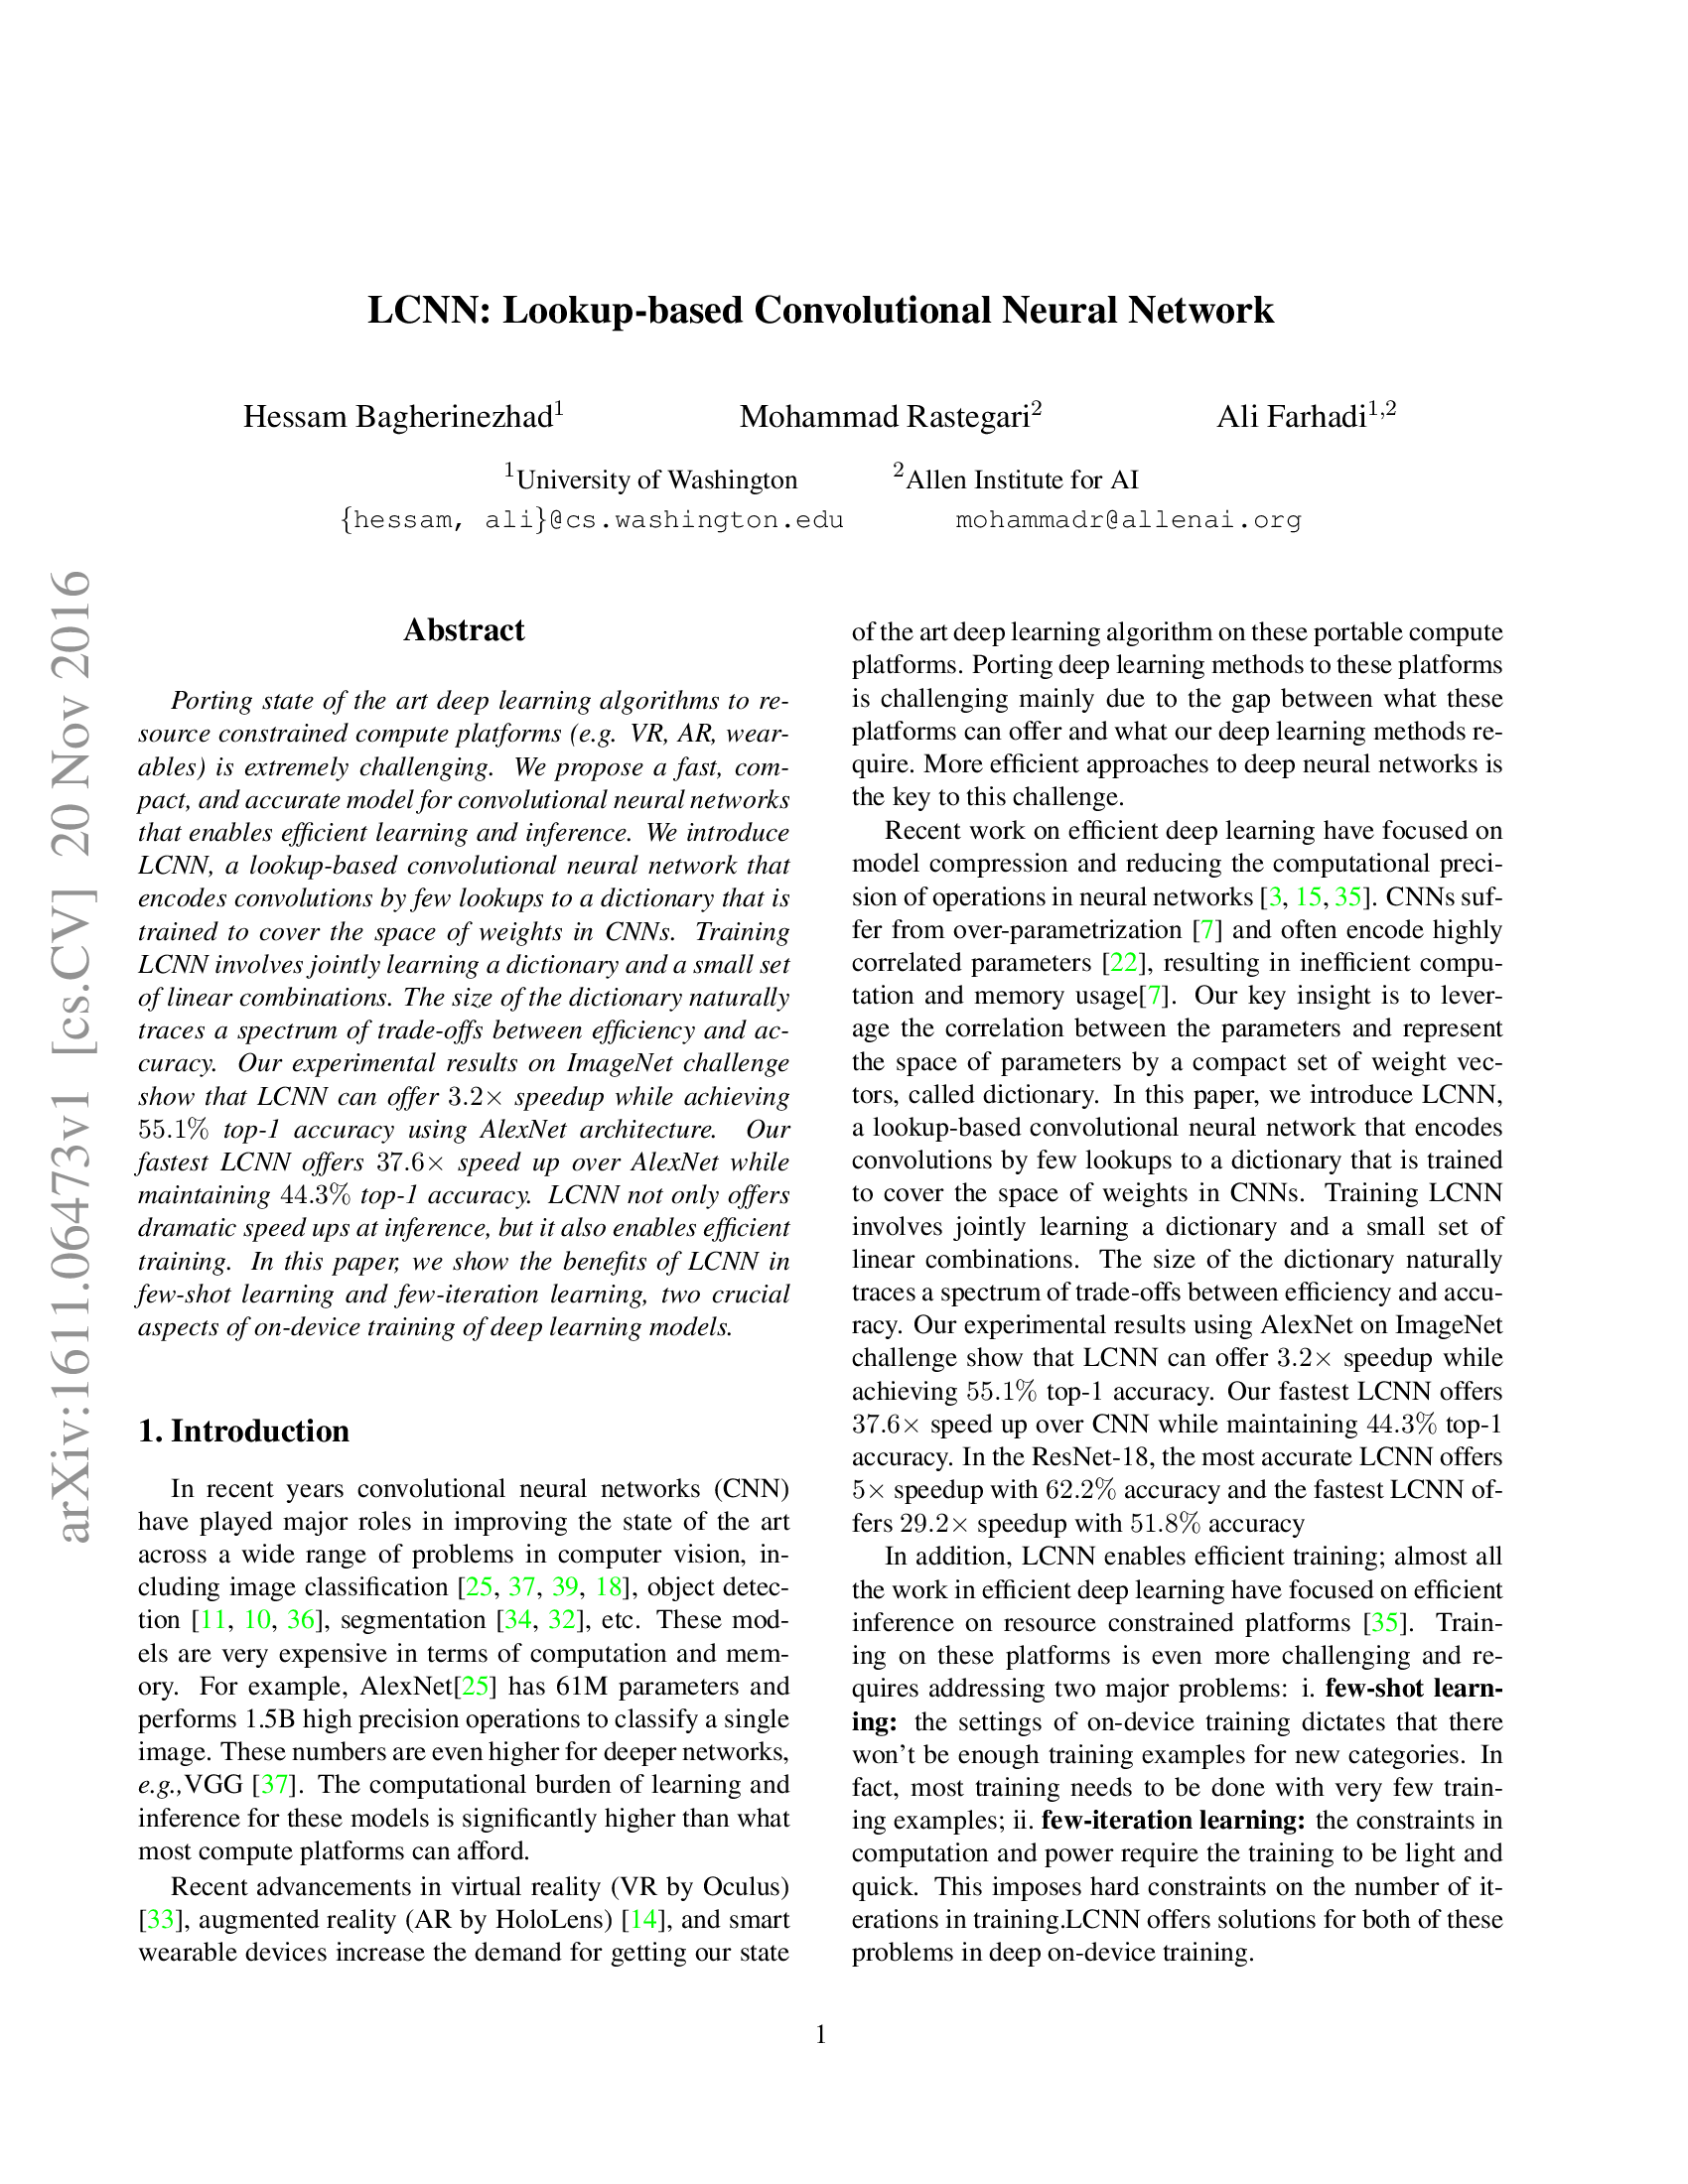 LCNN: Lookup-Based Convolutional Neural Network